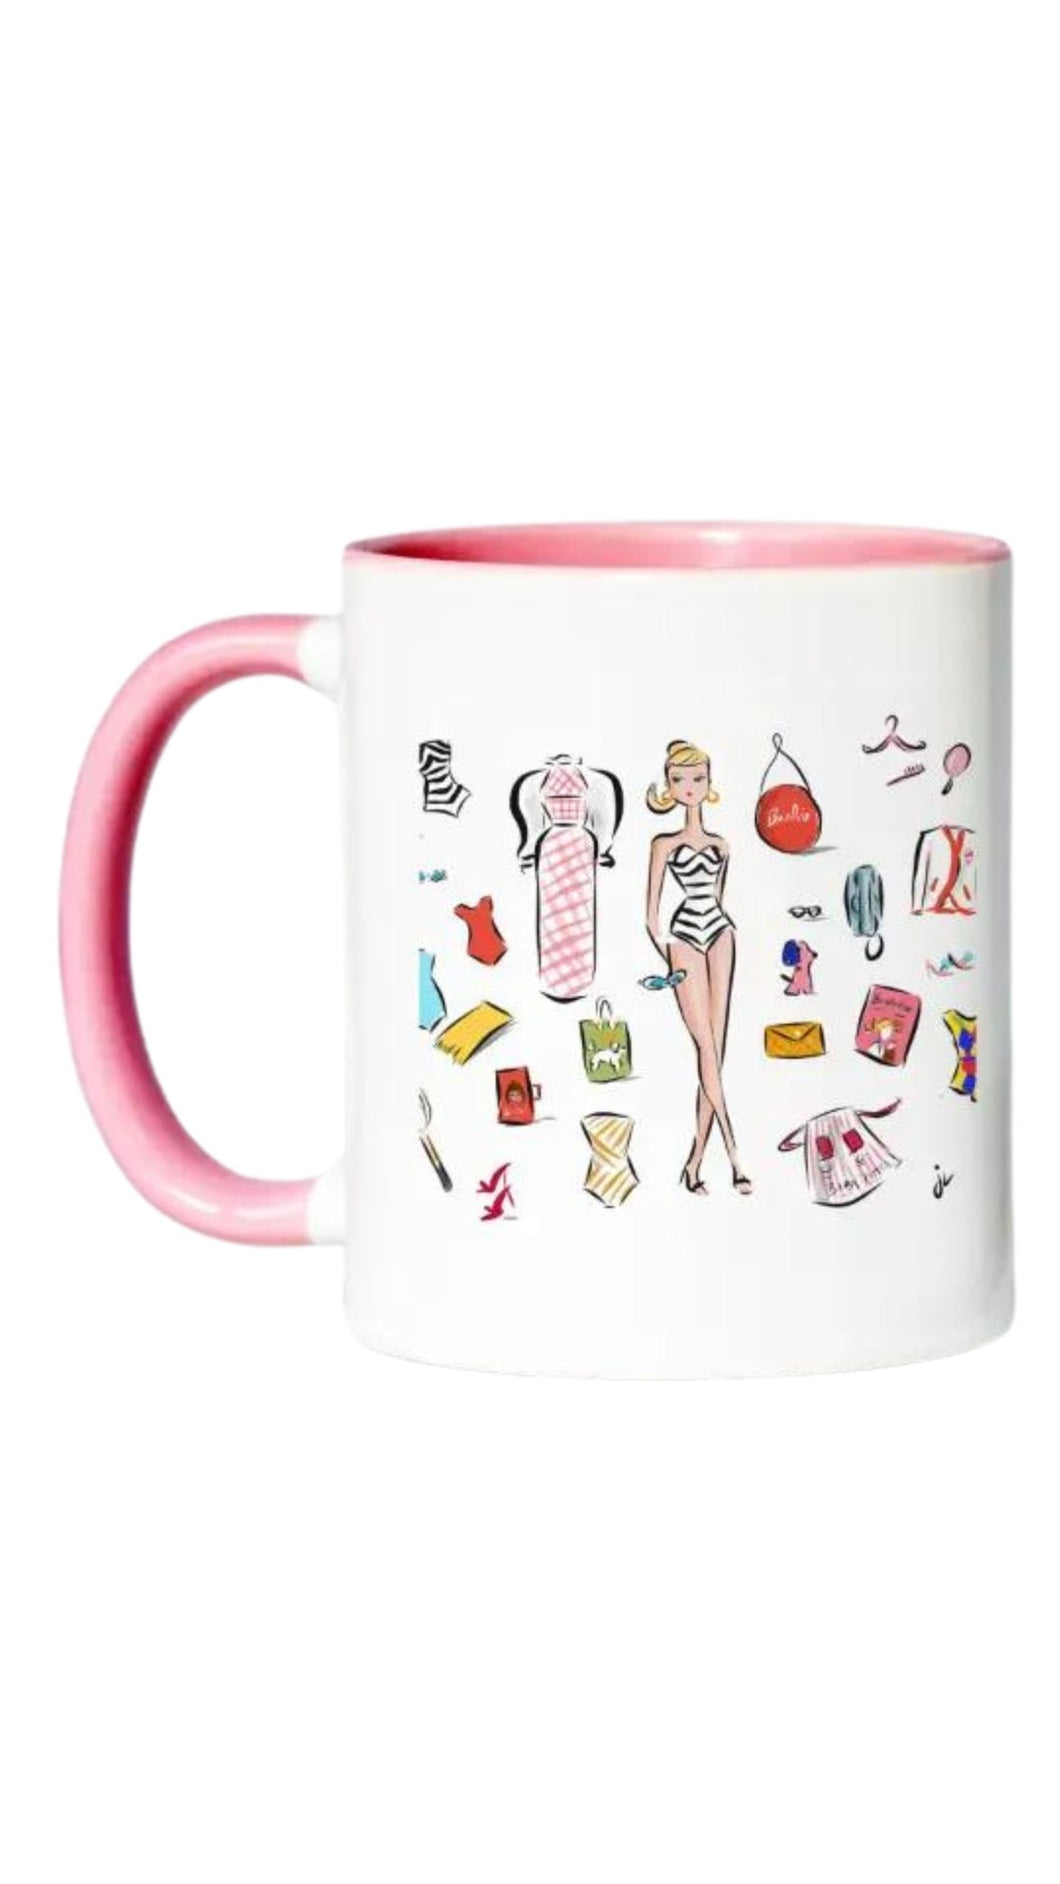 Barbie Love Mug